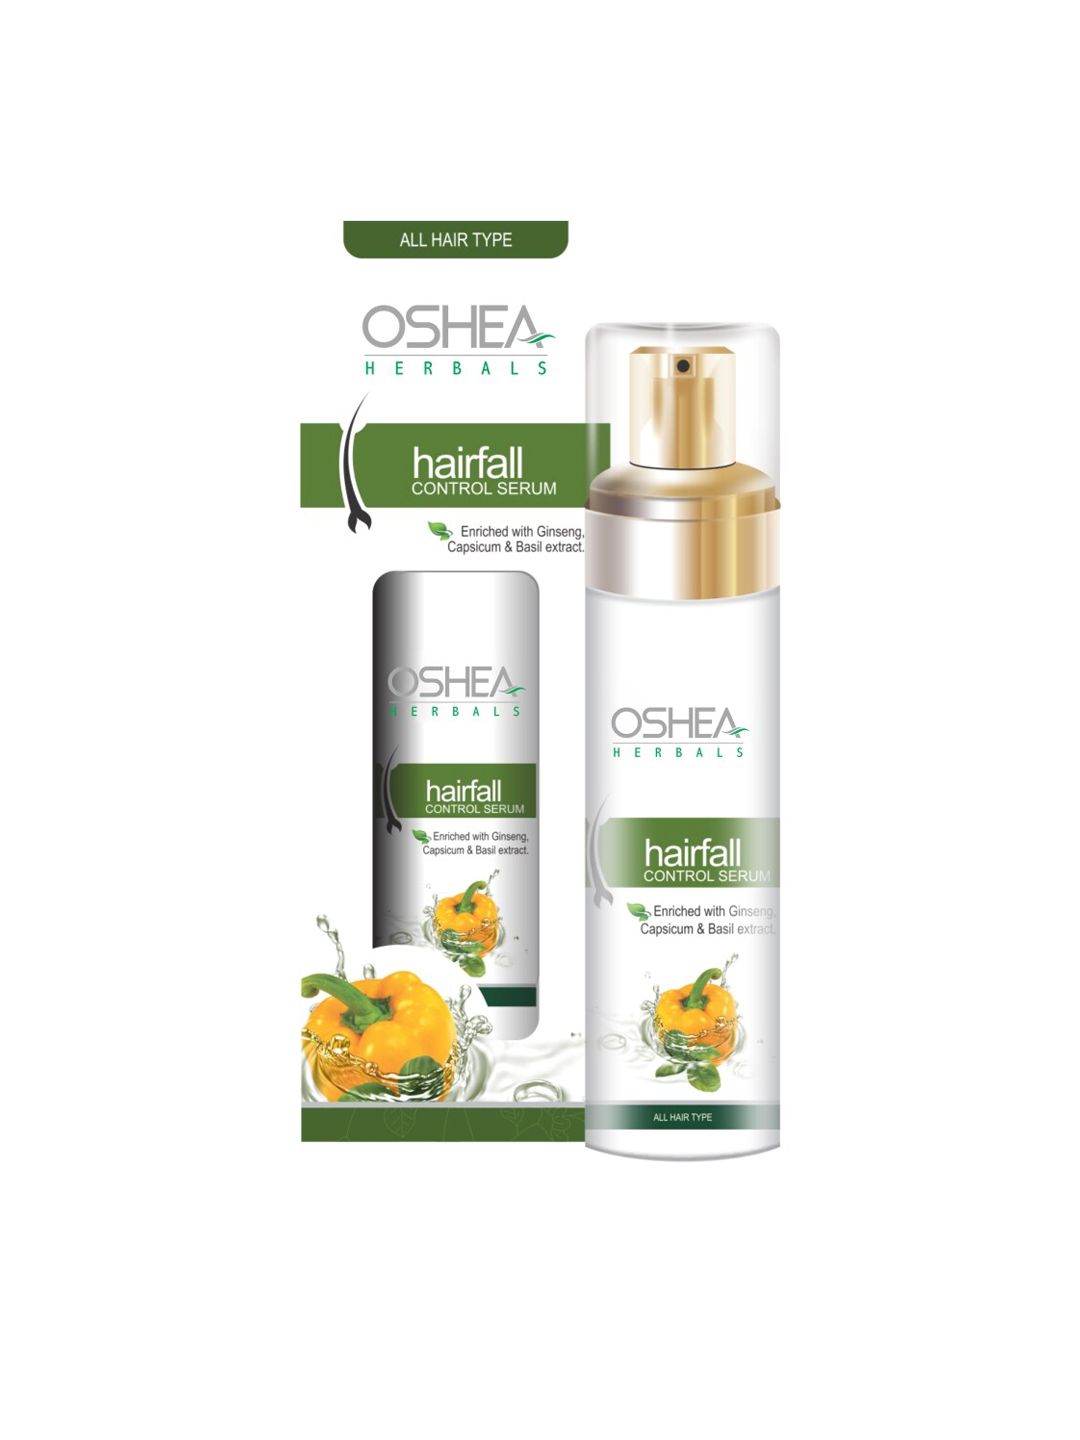 Oshea Herbals Hairfall Control Serum - 50 ml Price in India